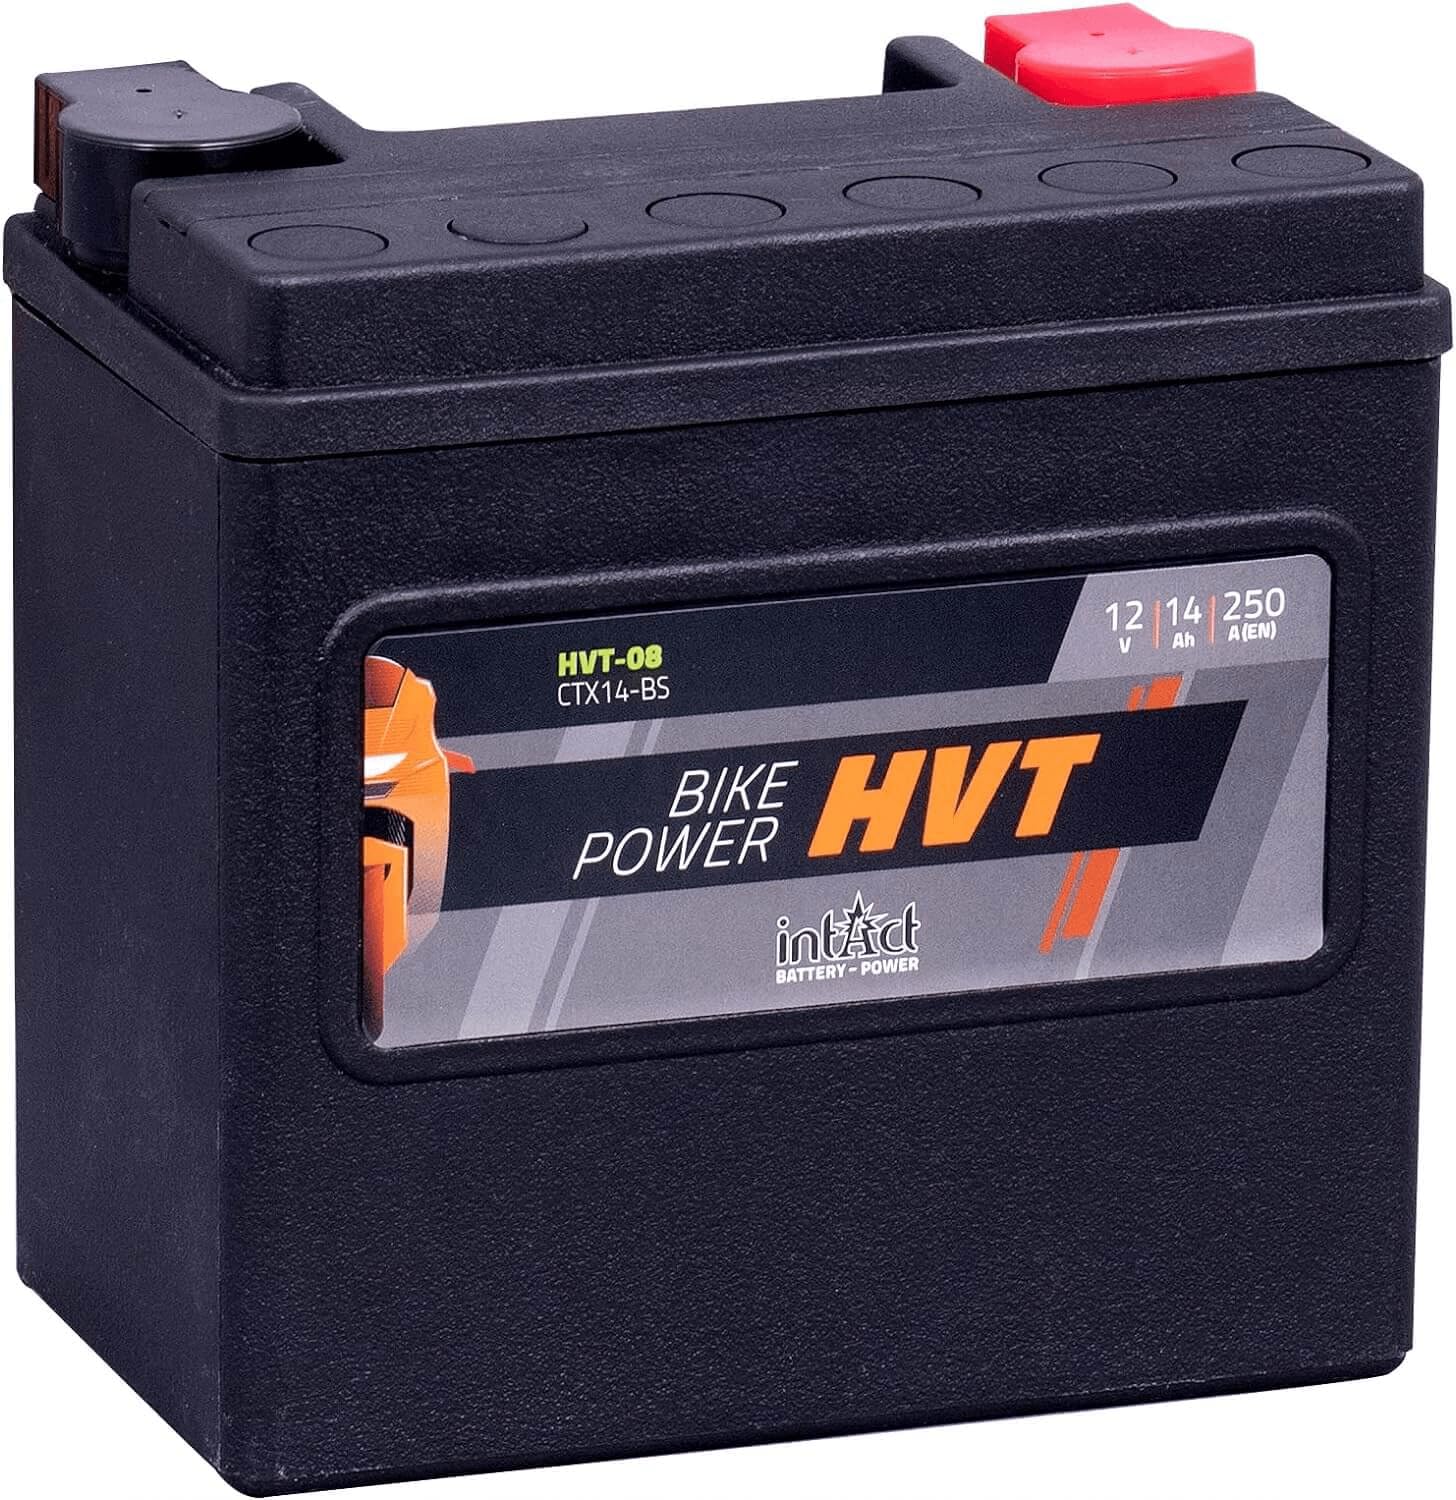 intAct - HVT MOTORRADBATTERIE | Batterie für Roller, Motorrad, Rasentraktor. Wartungsfreier & auslaufsicherer Akku. | HVT-08, CTX14-BS, 65948-00, 12V Batterie, 14 AH (c20), 250 A (EN) | Maße: 150x87x145mm von Intact